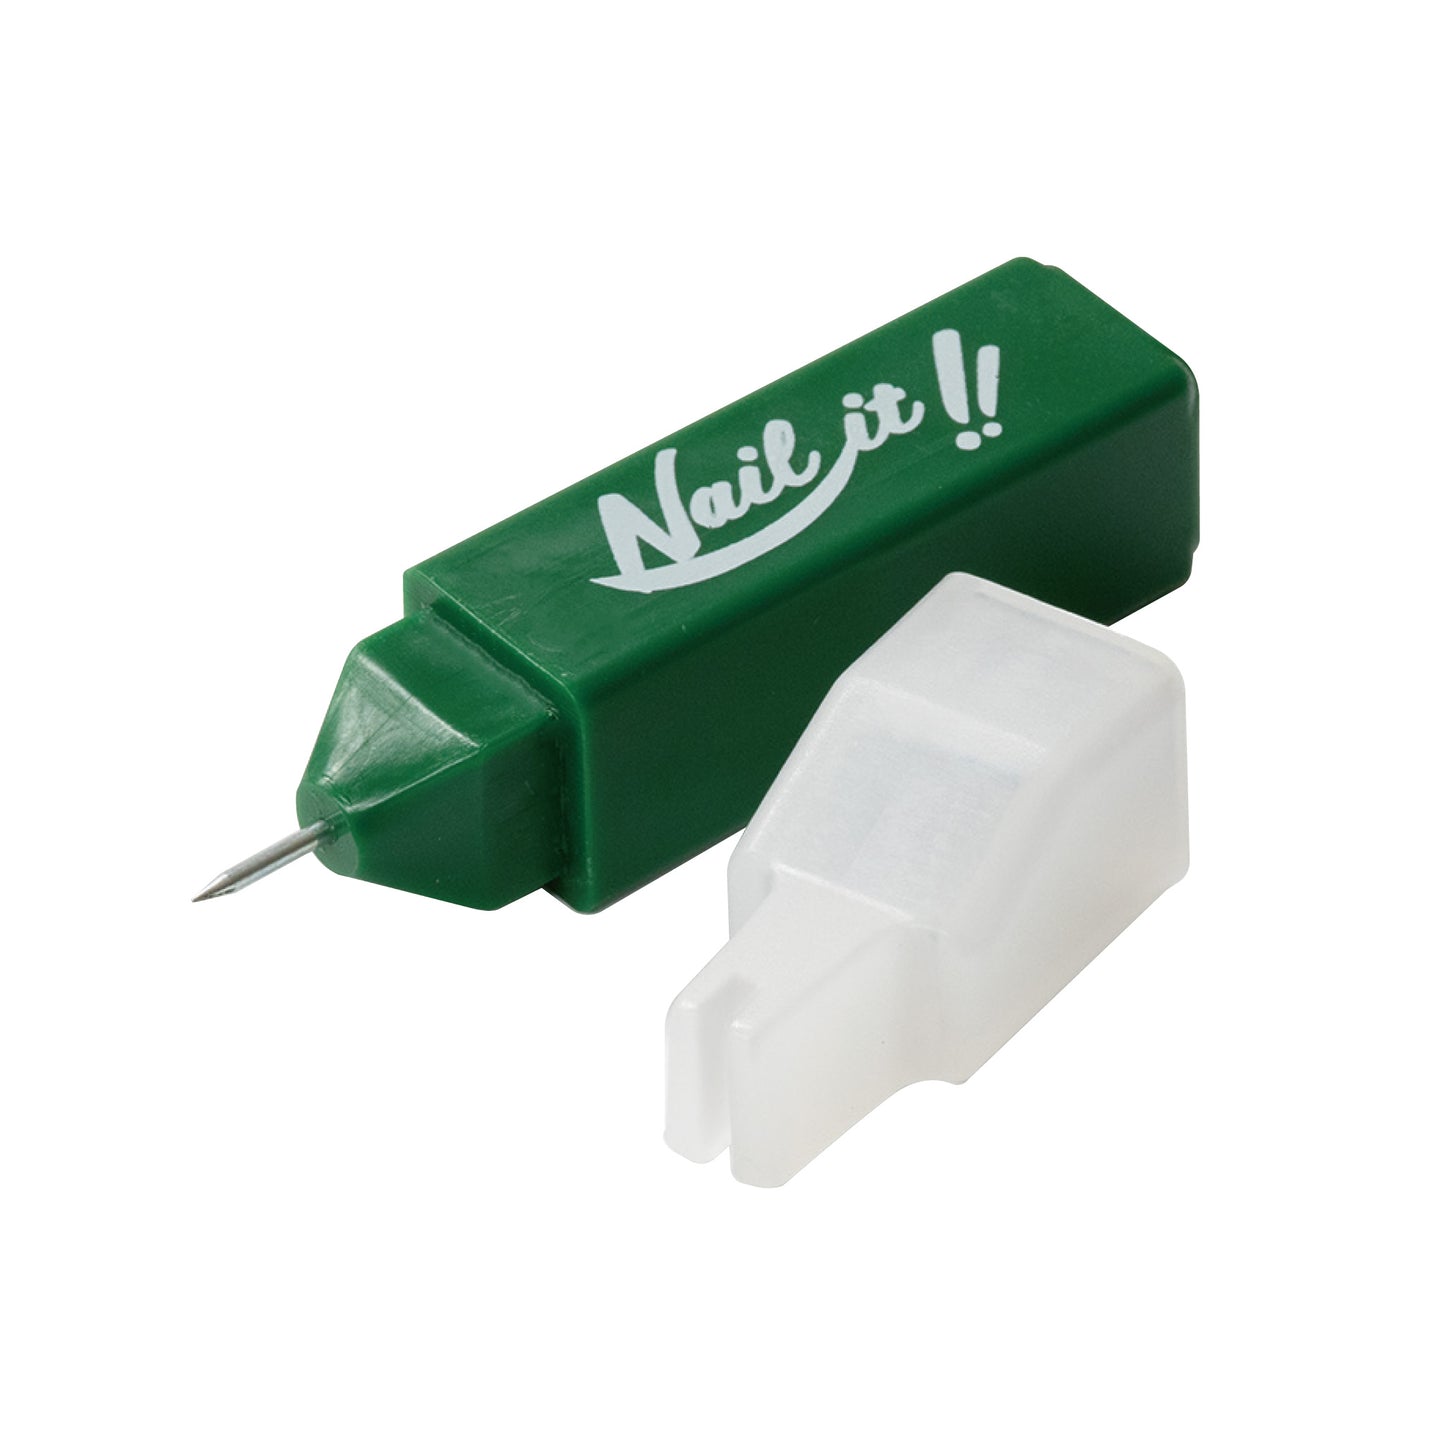 【送料無料】Nail it!! 軽量プラスチックハンマー+ネイルガイド 2種ツールセット